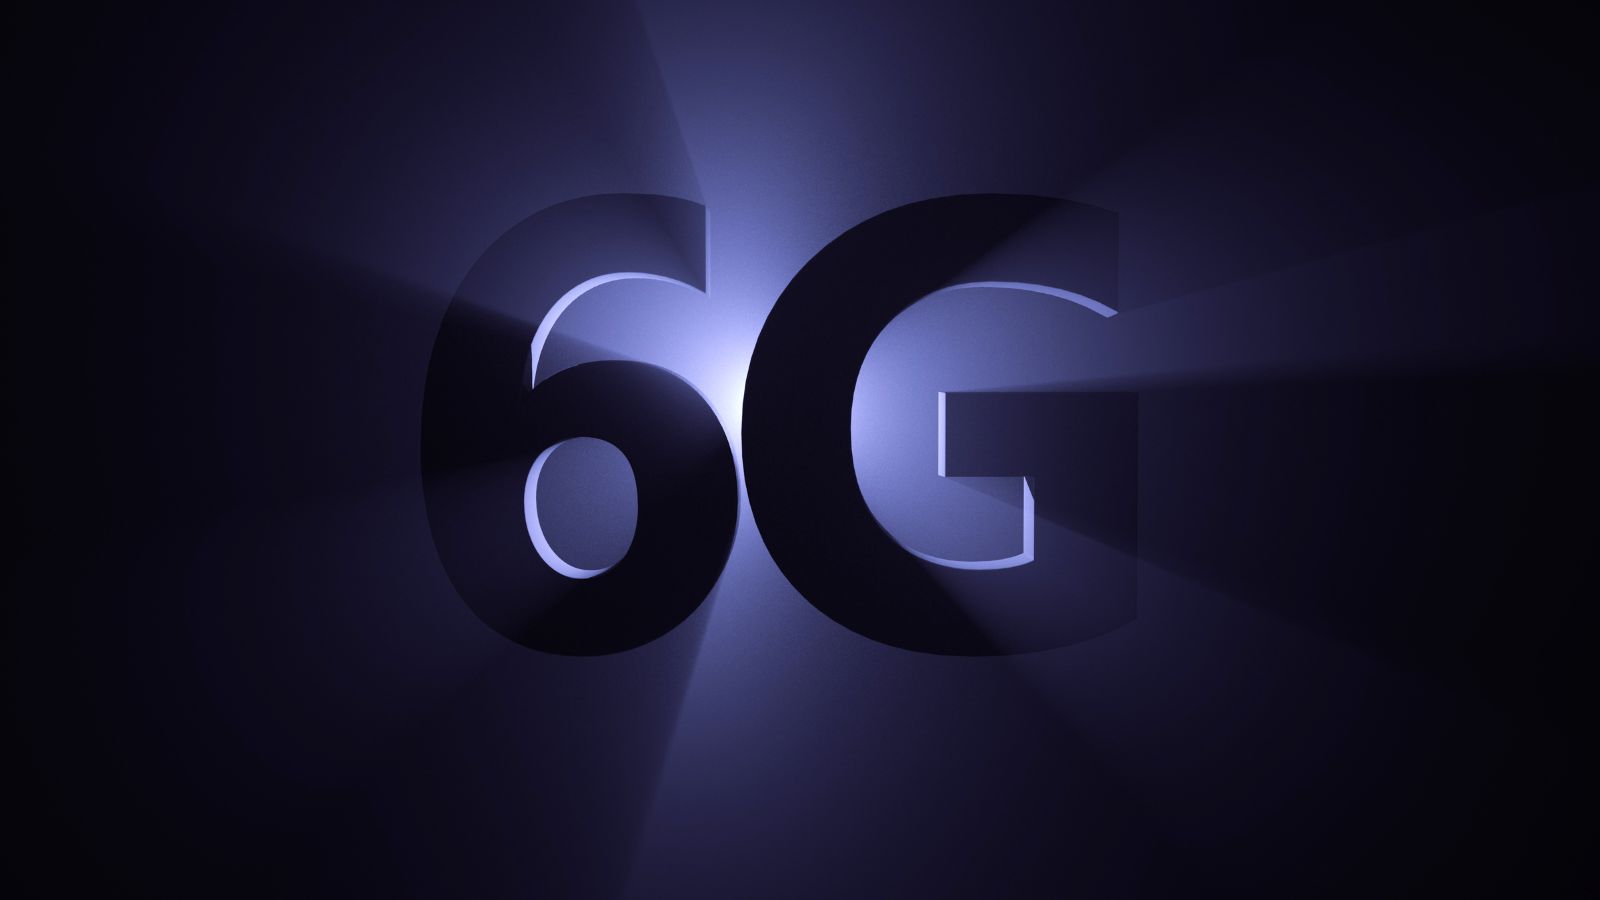 6G, LG raggiunge un nuovo importante RISULTATO nella trasmissione